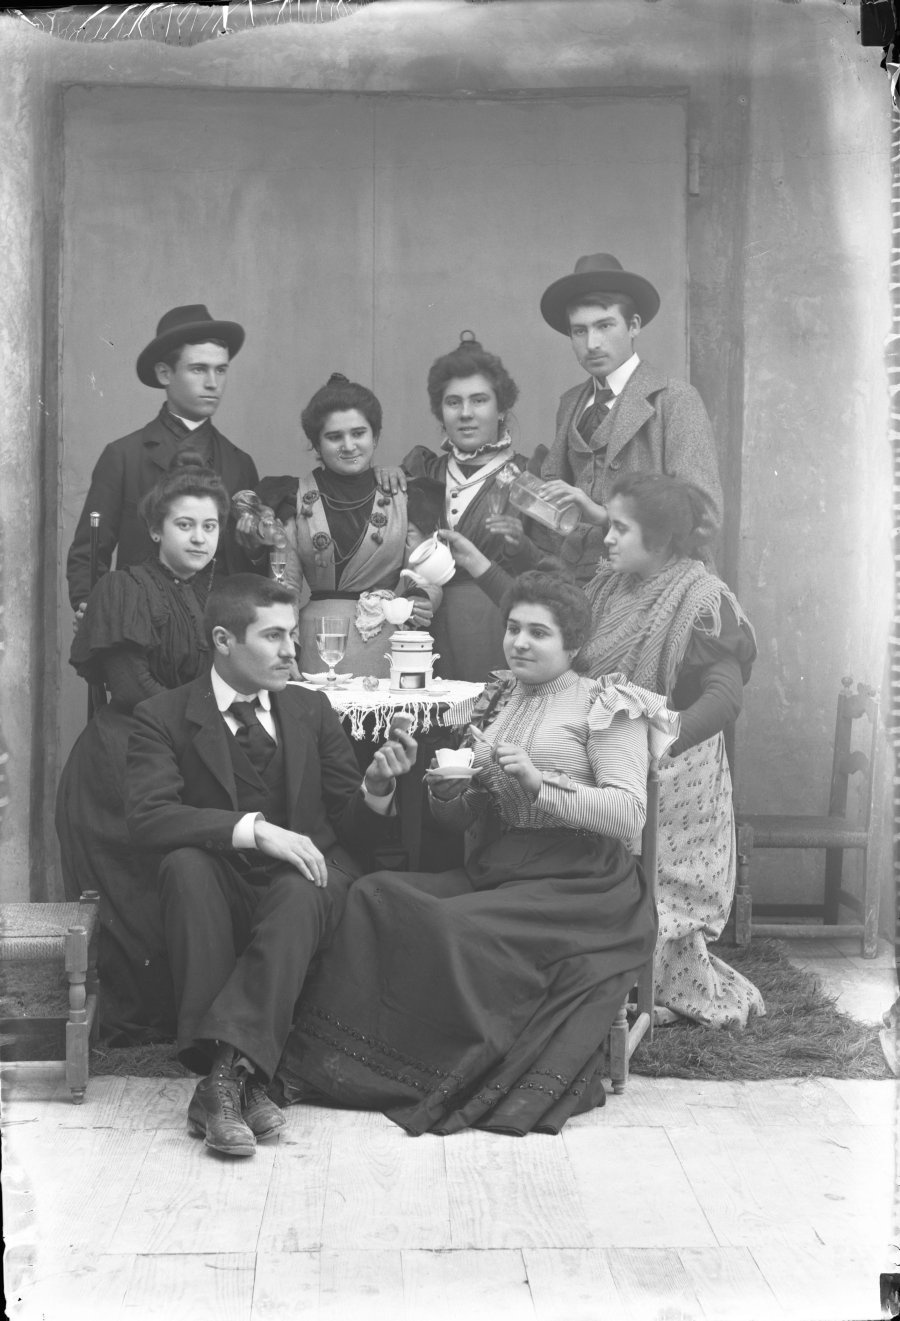 Retrato de estudio de un grupo de hombres y mujeres simulando una escena de reunión en torno a una mesa para tomar el té